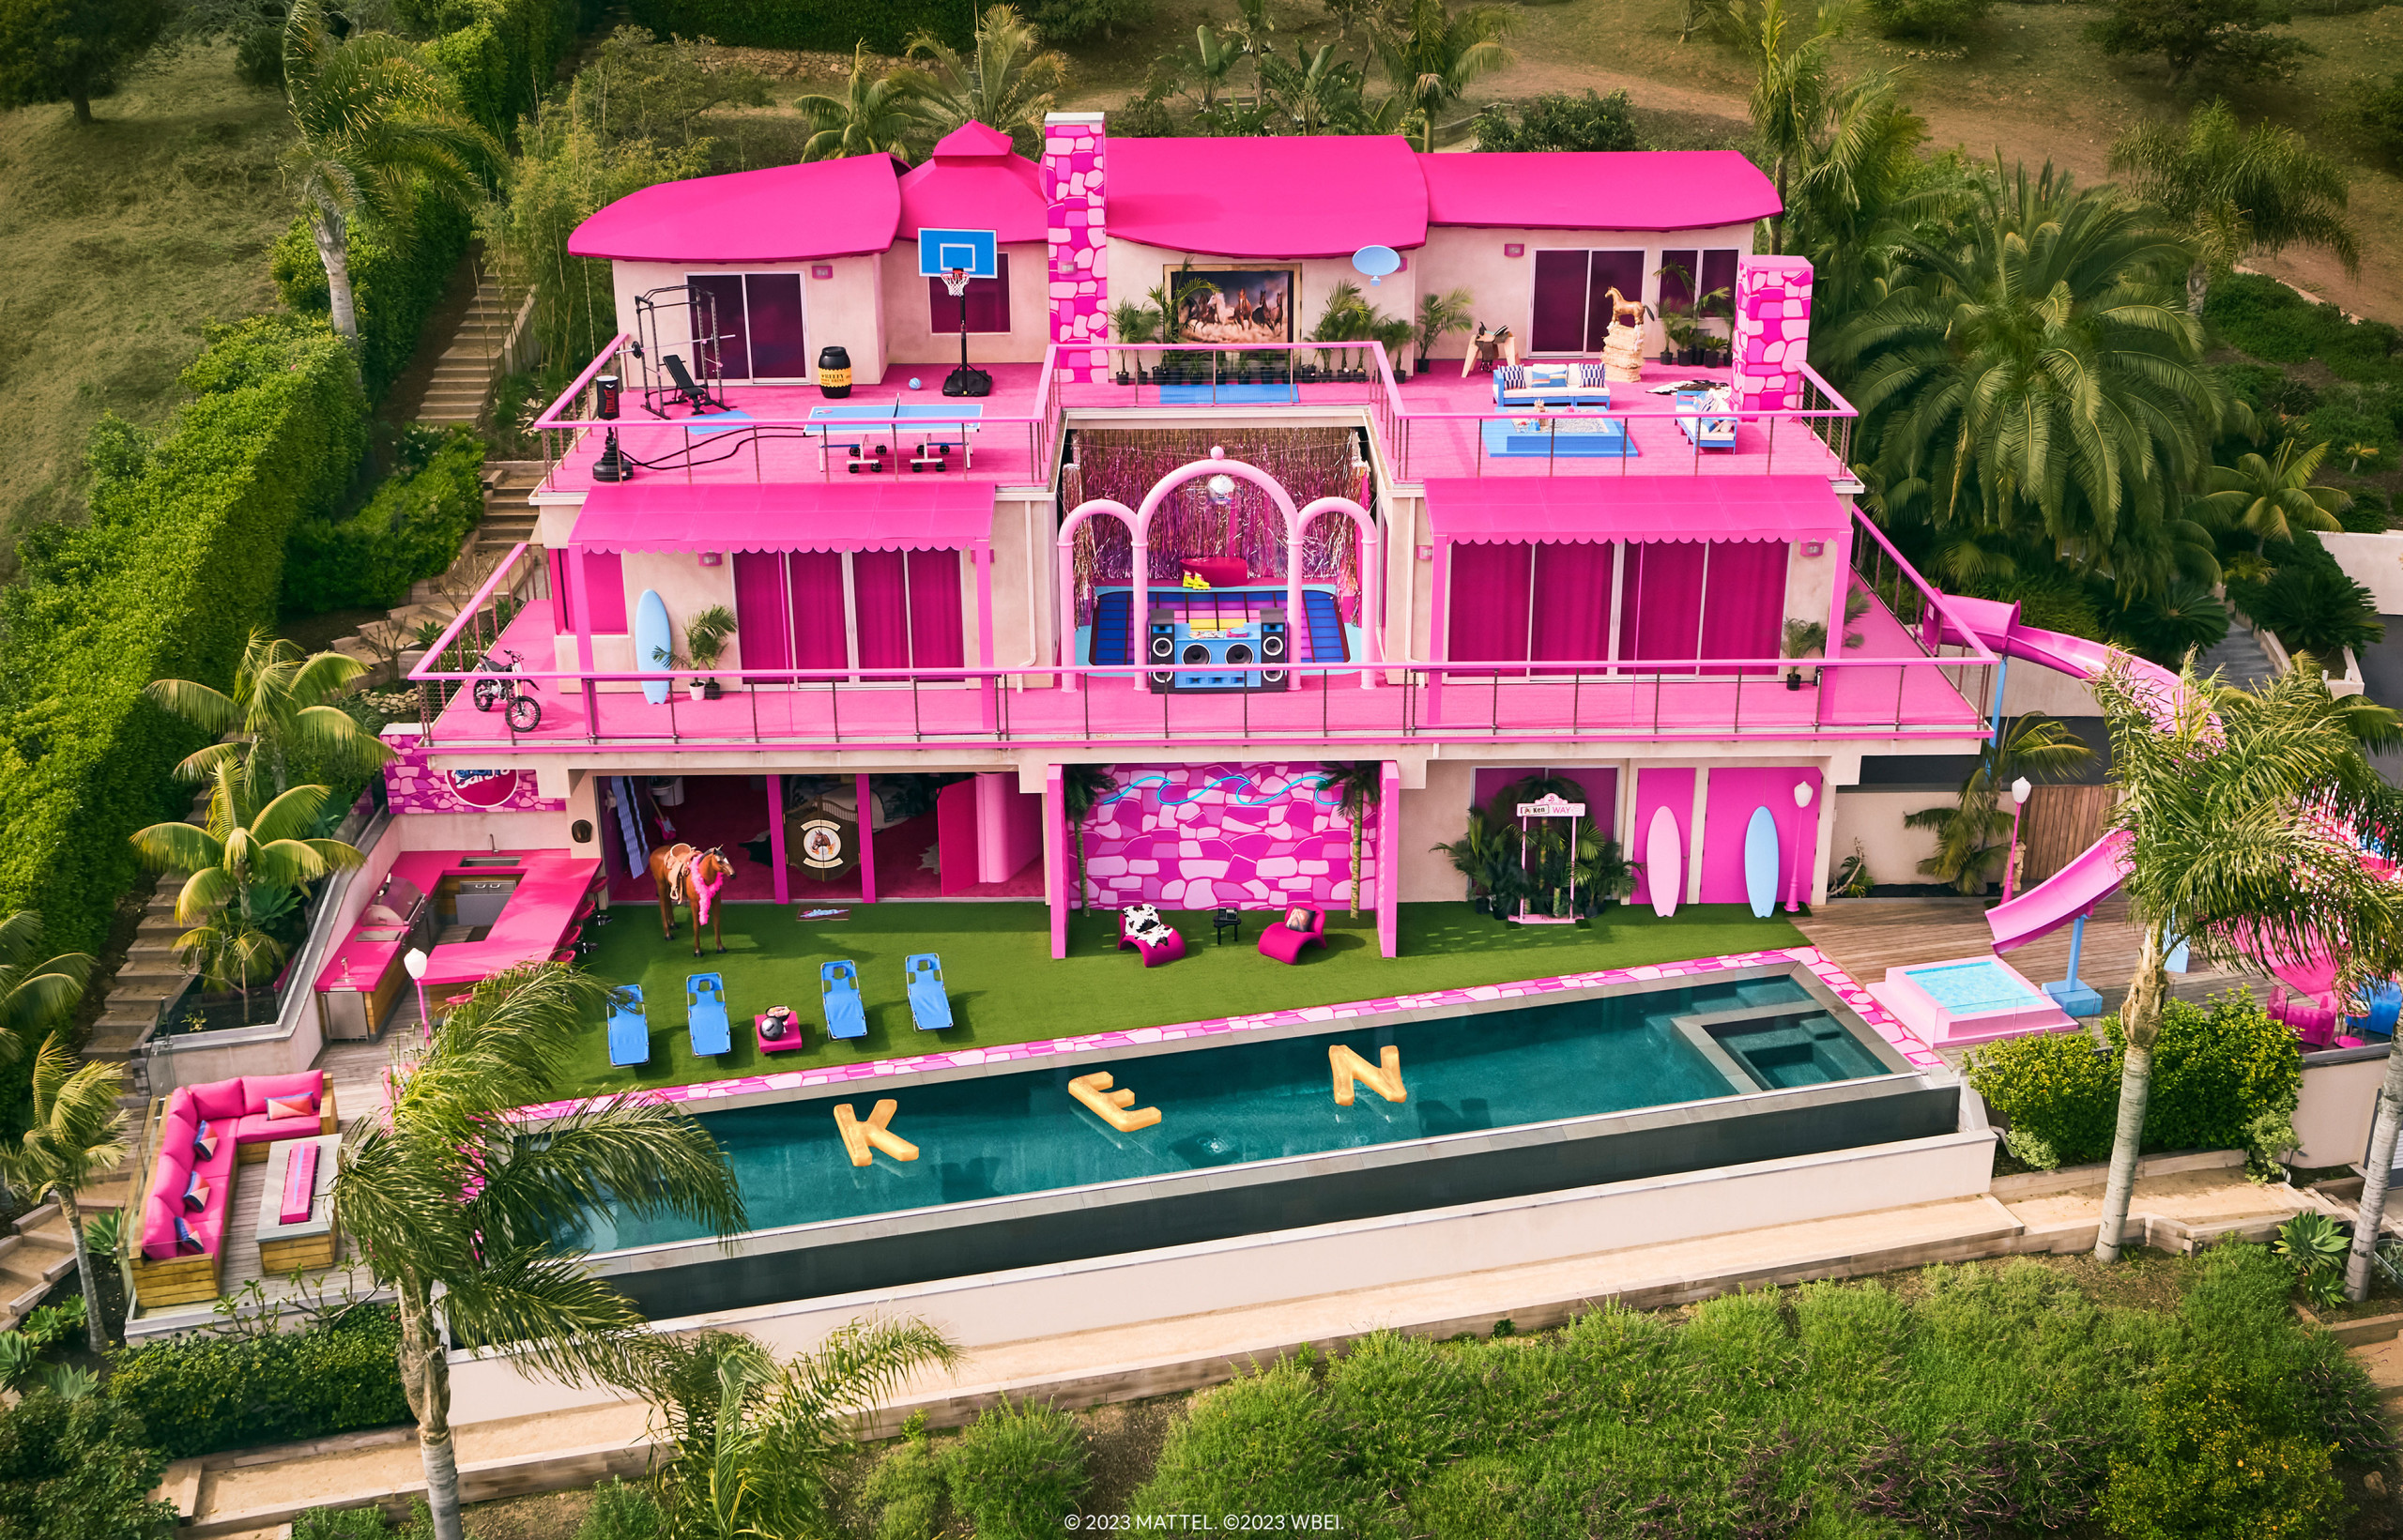 Maison de Barbie : ce qu'elle dit du design depuis les années 50